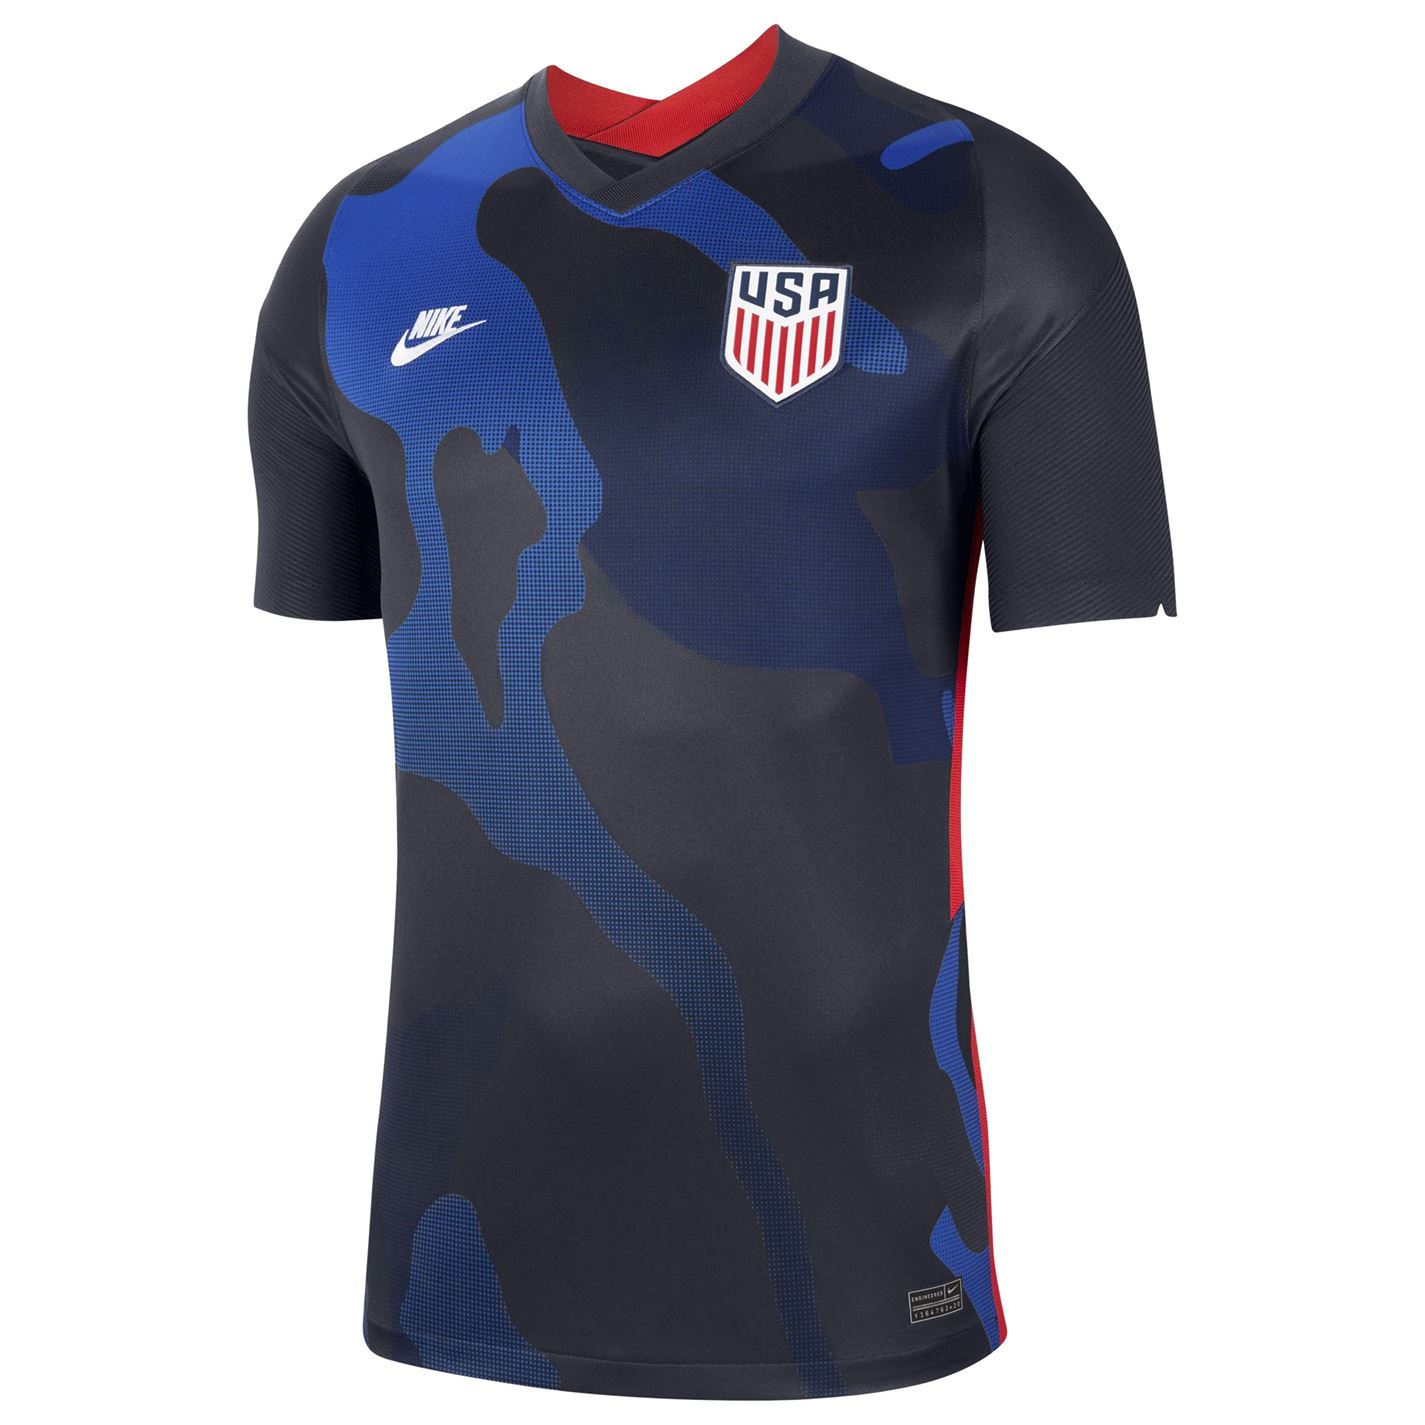 Tricou Nike USA 2020 pentru Barbati bleumarin alb